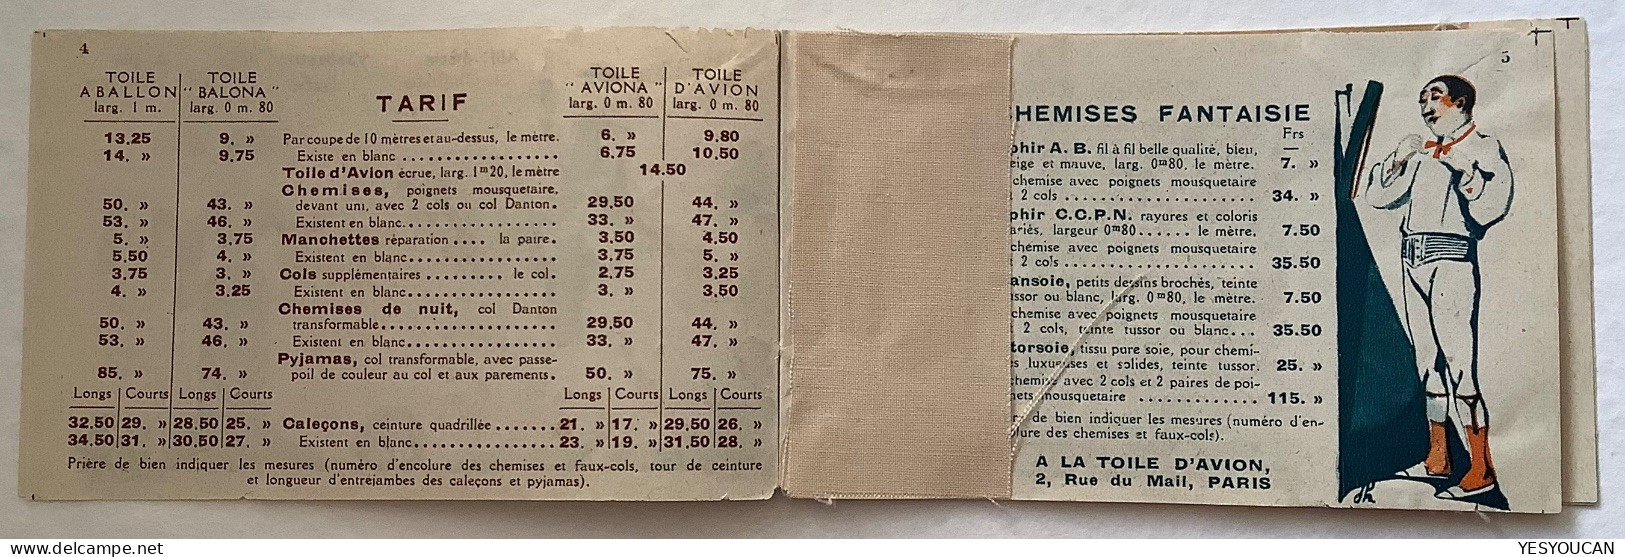 1929 #257 50c Jeanne d‘ Arc carnet histoire de la chemise, fromage vache qui rit, vin (France MH booklet shirt textile